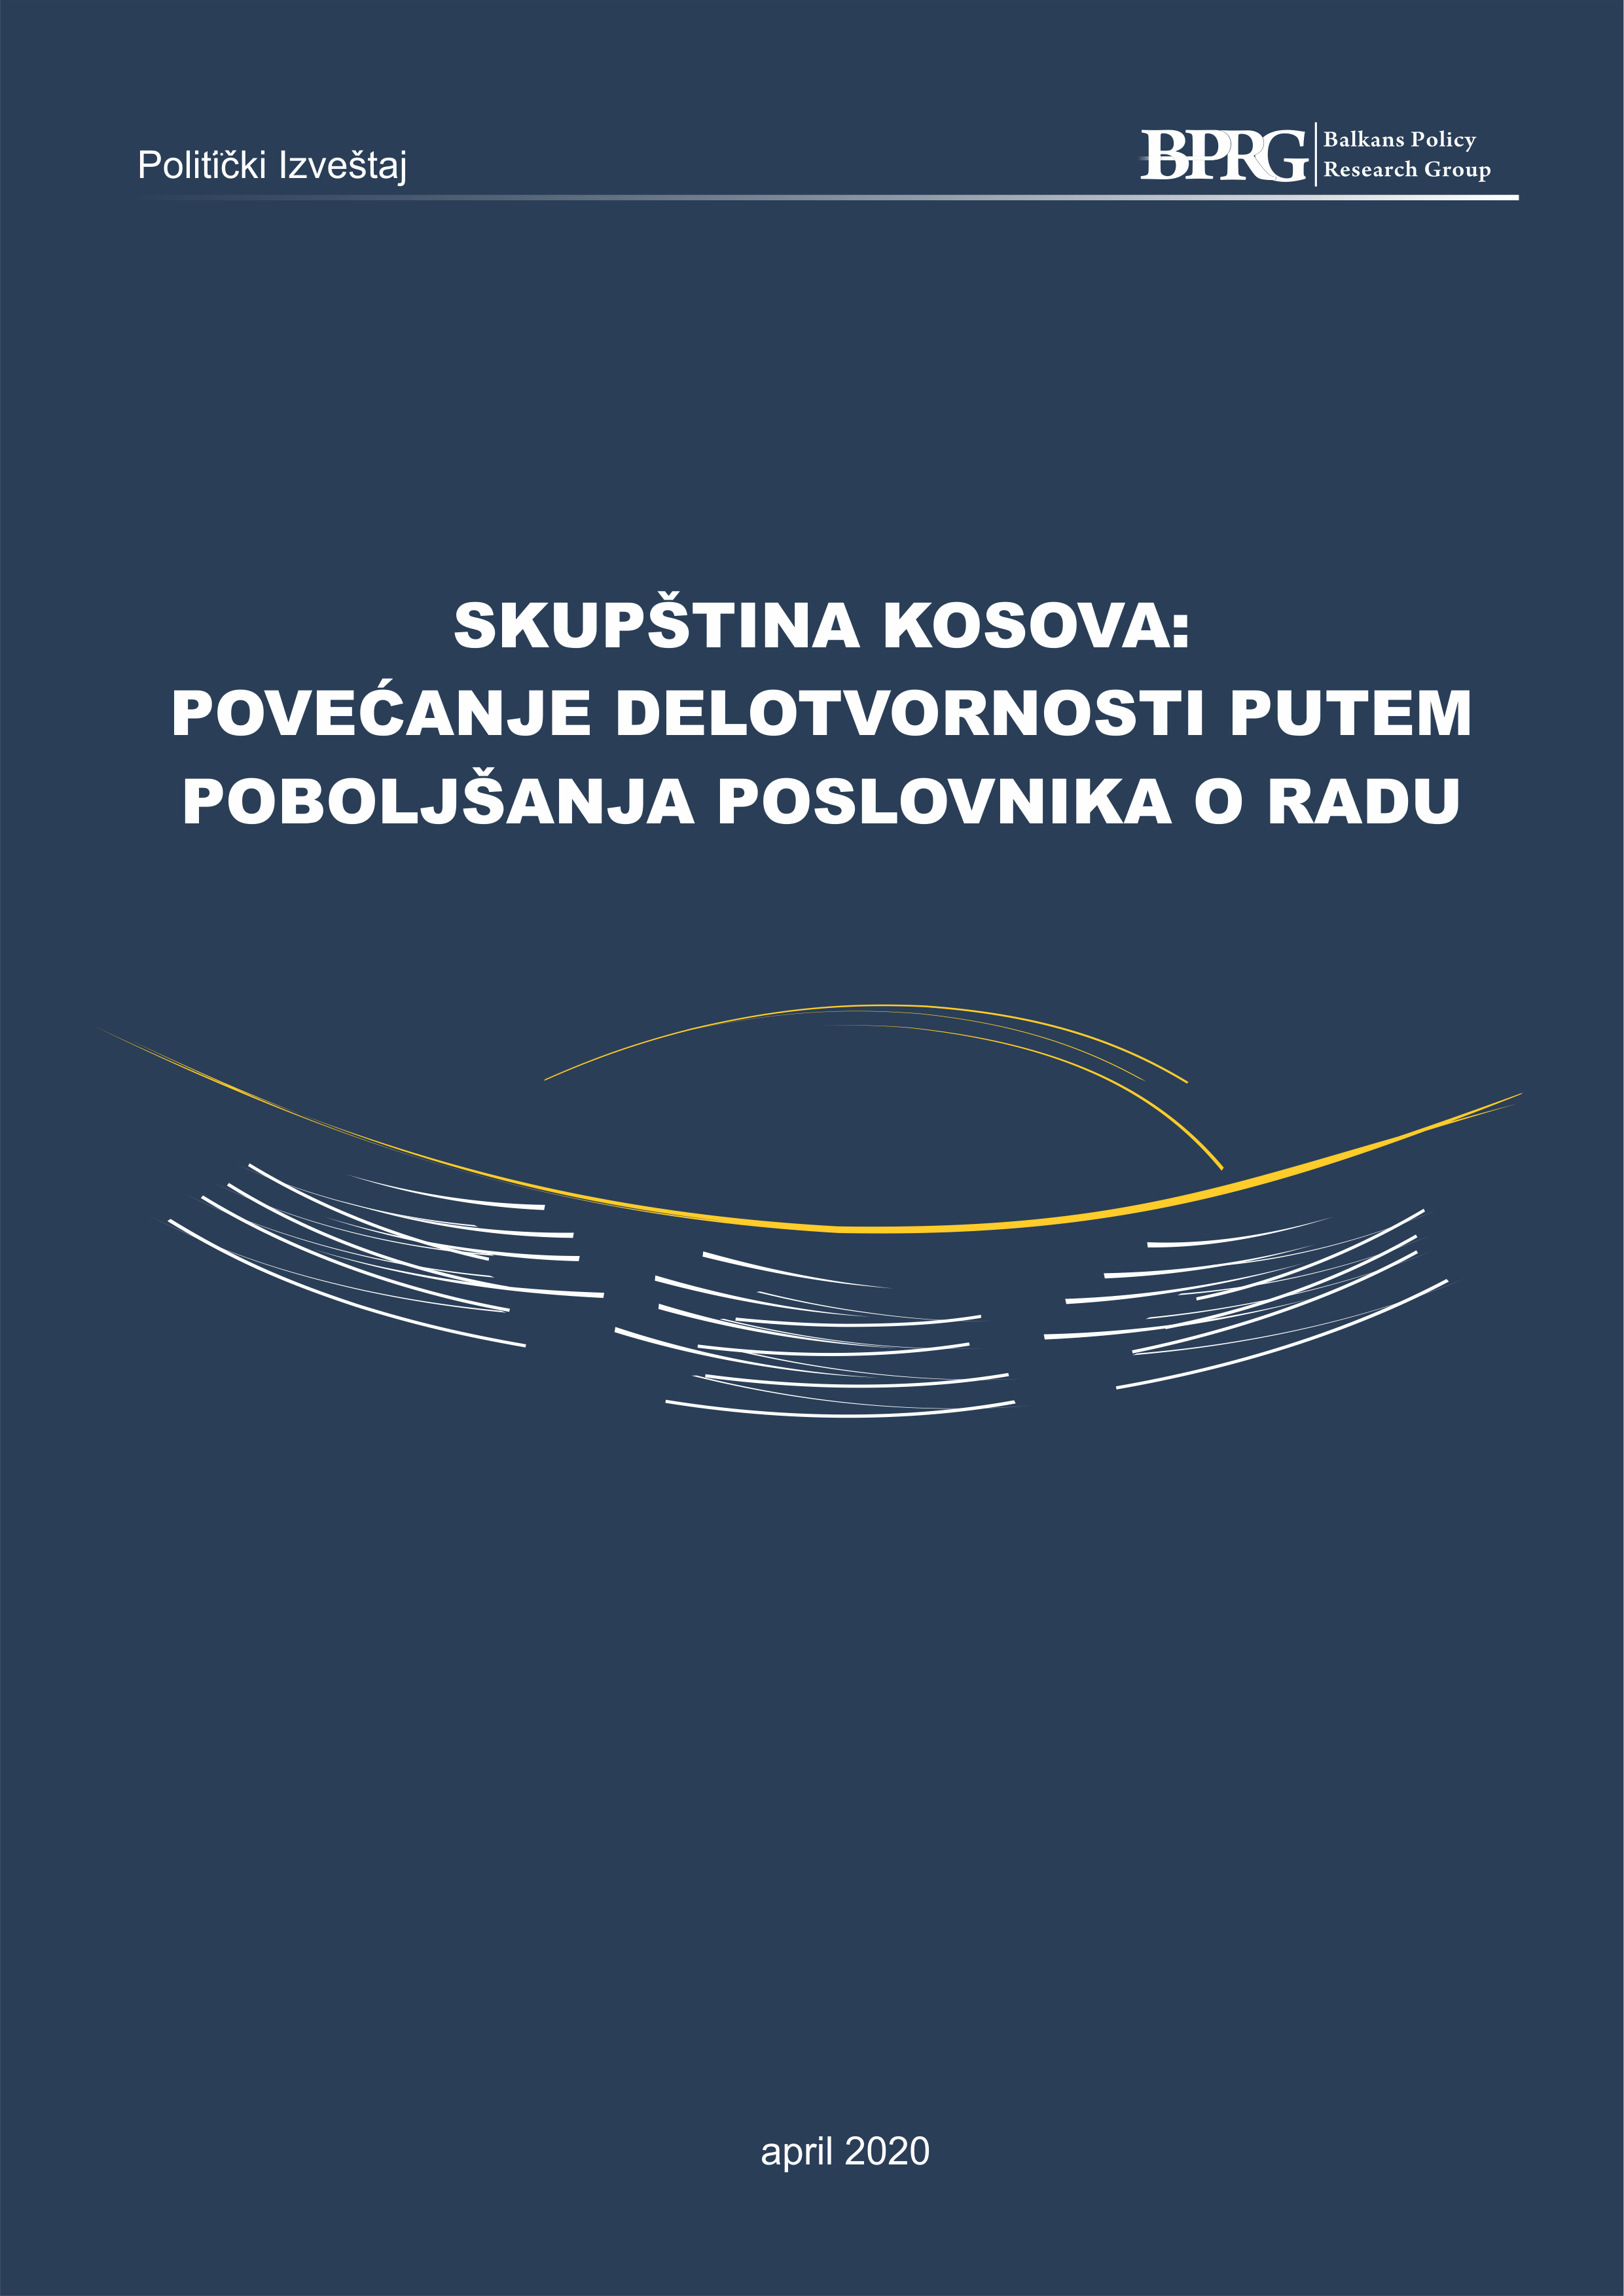 Skupština Kosova: Povećanje Delotvornosti Putem Poboljšanja Poslovnika o Radu